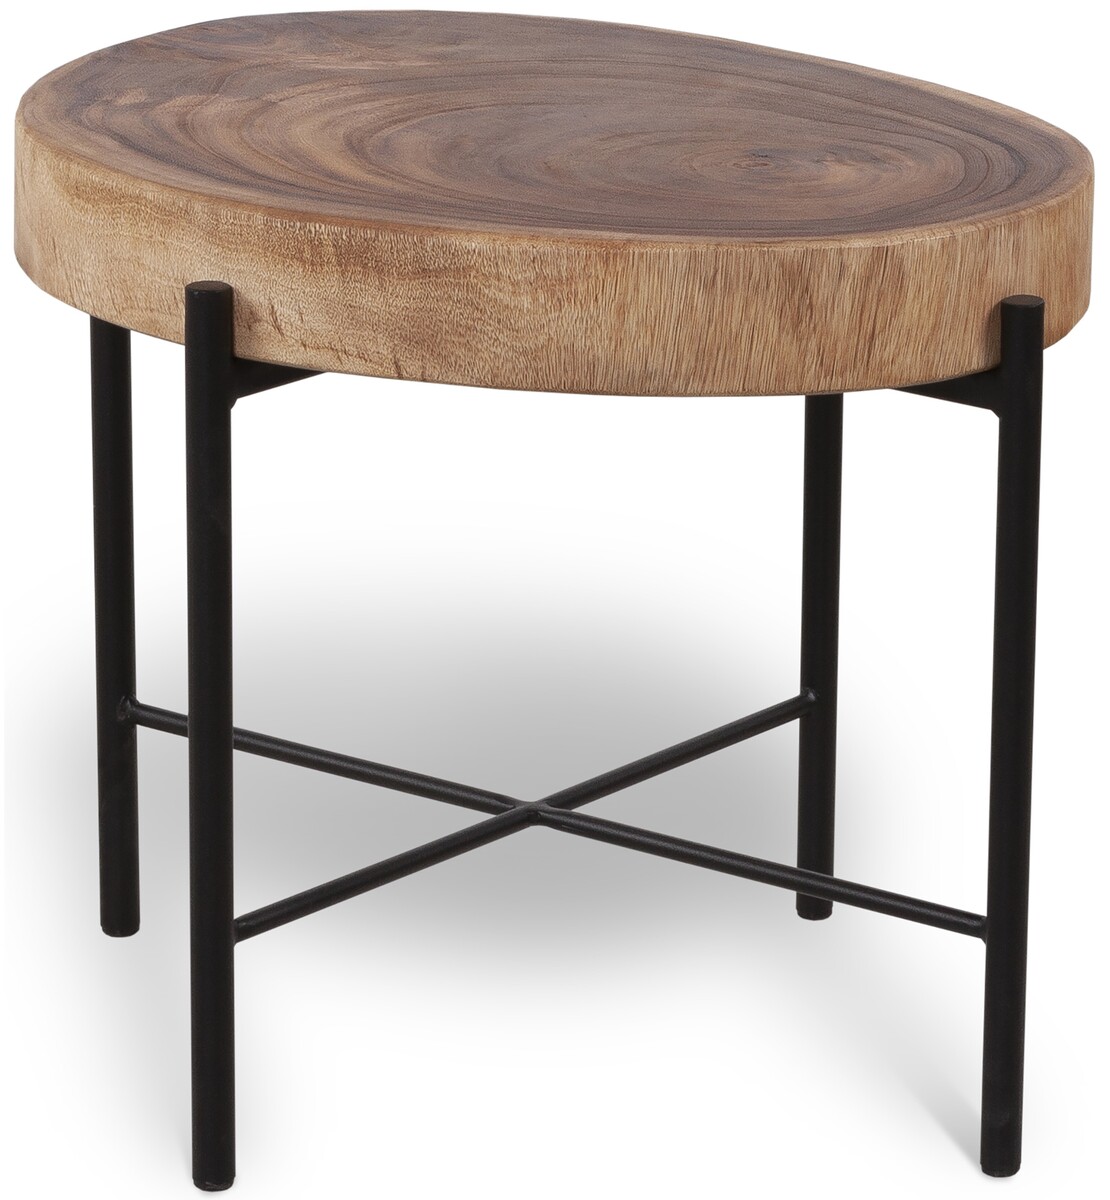 Ciekawy stolik kawowy z grubego drewna SUAR, naturalne kolory drewna, podstawa lakierowana proszkowo w kolorze czarnym